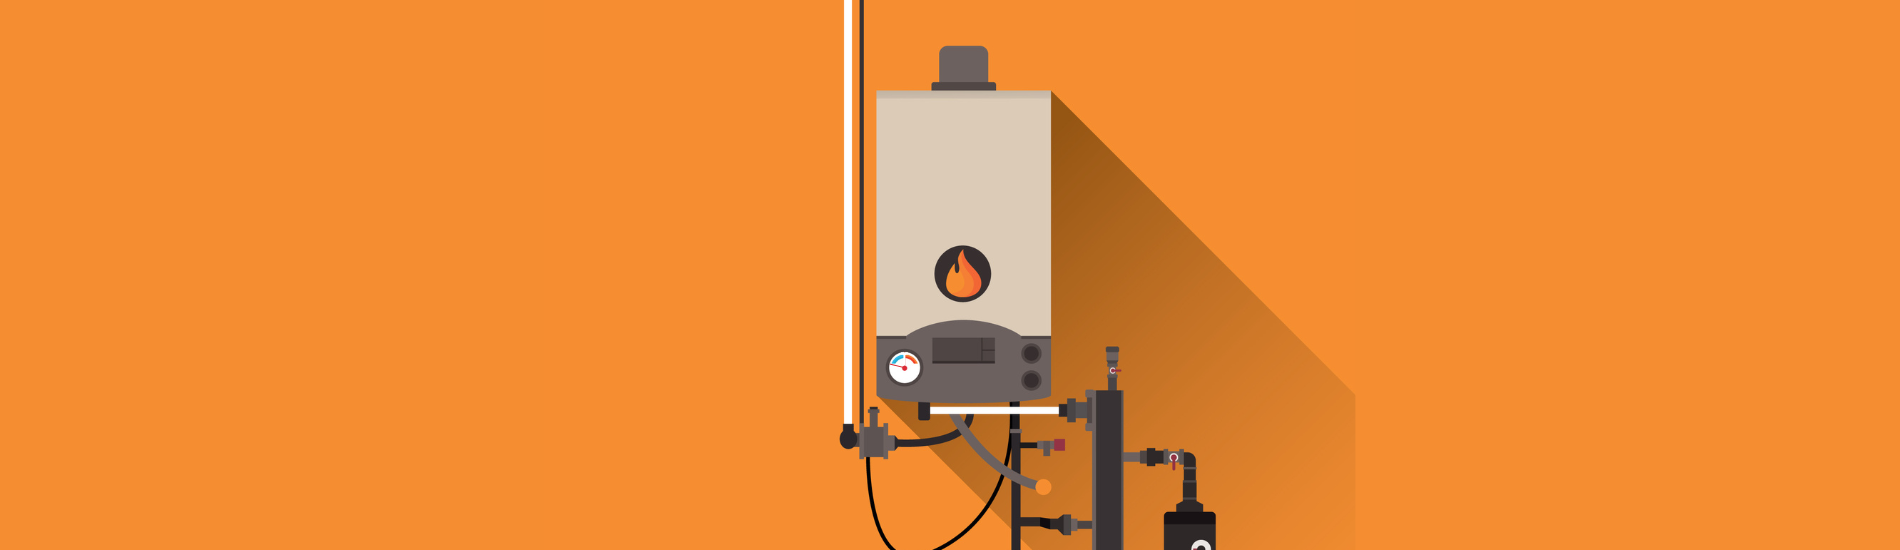 Low boiler pressure blog header